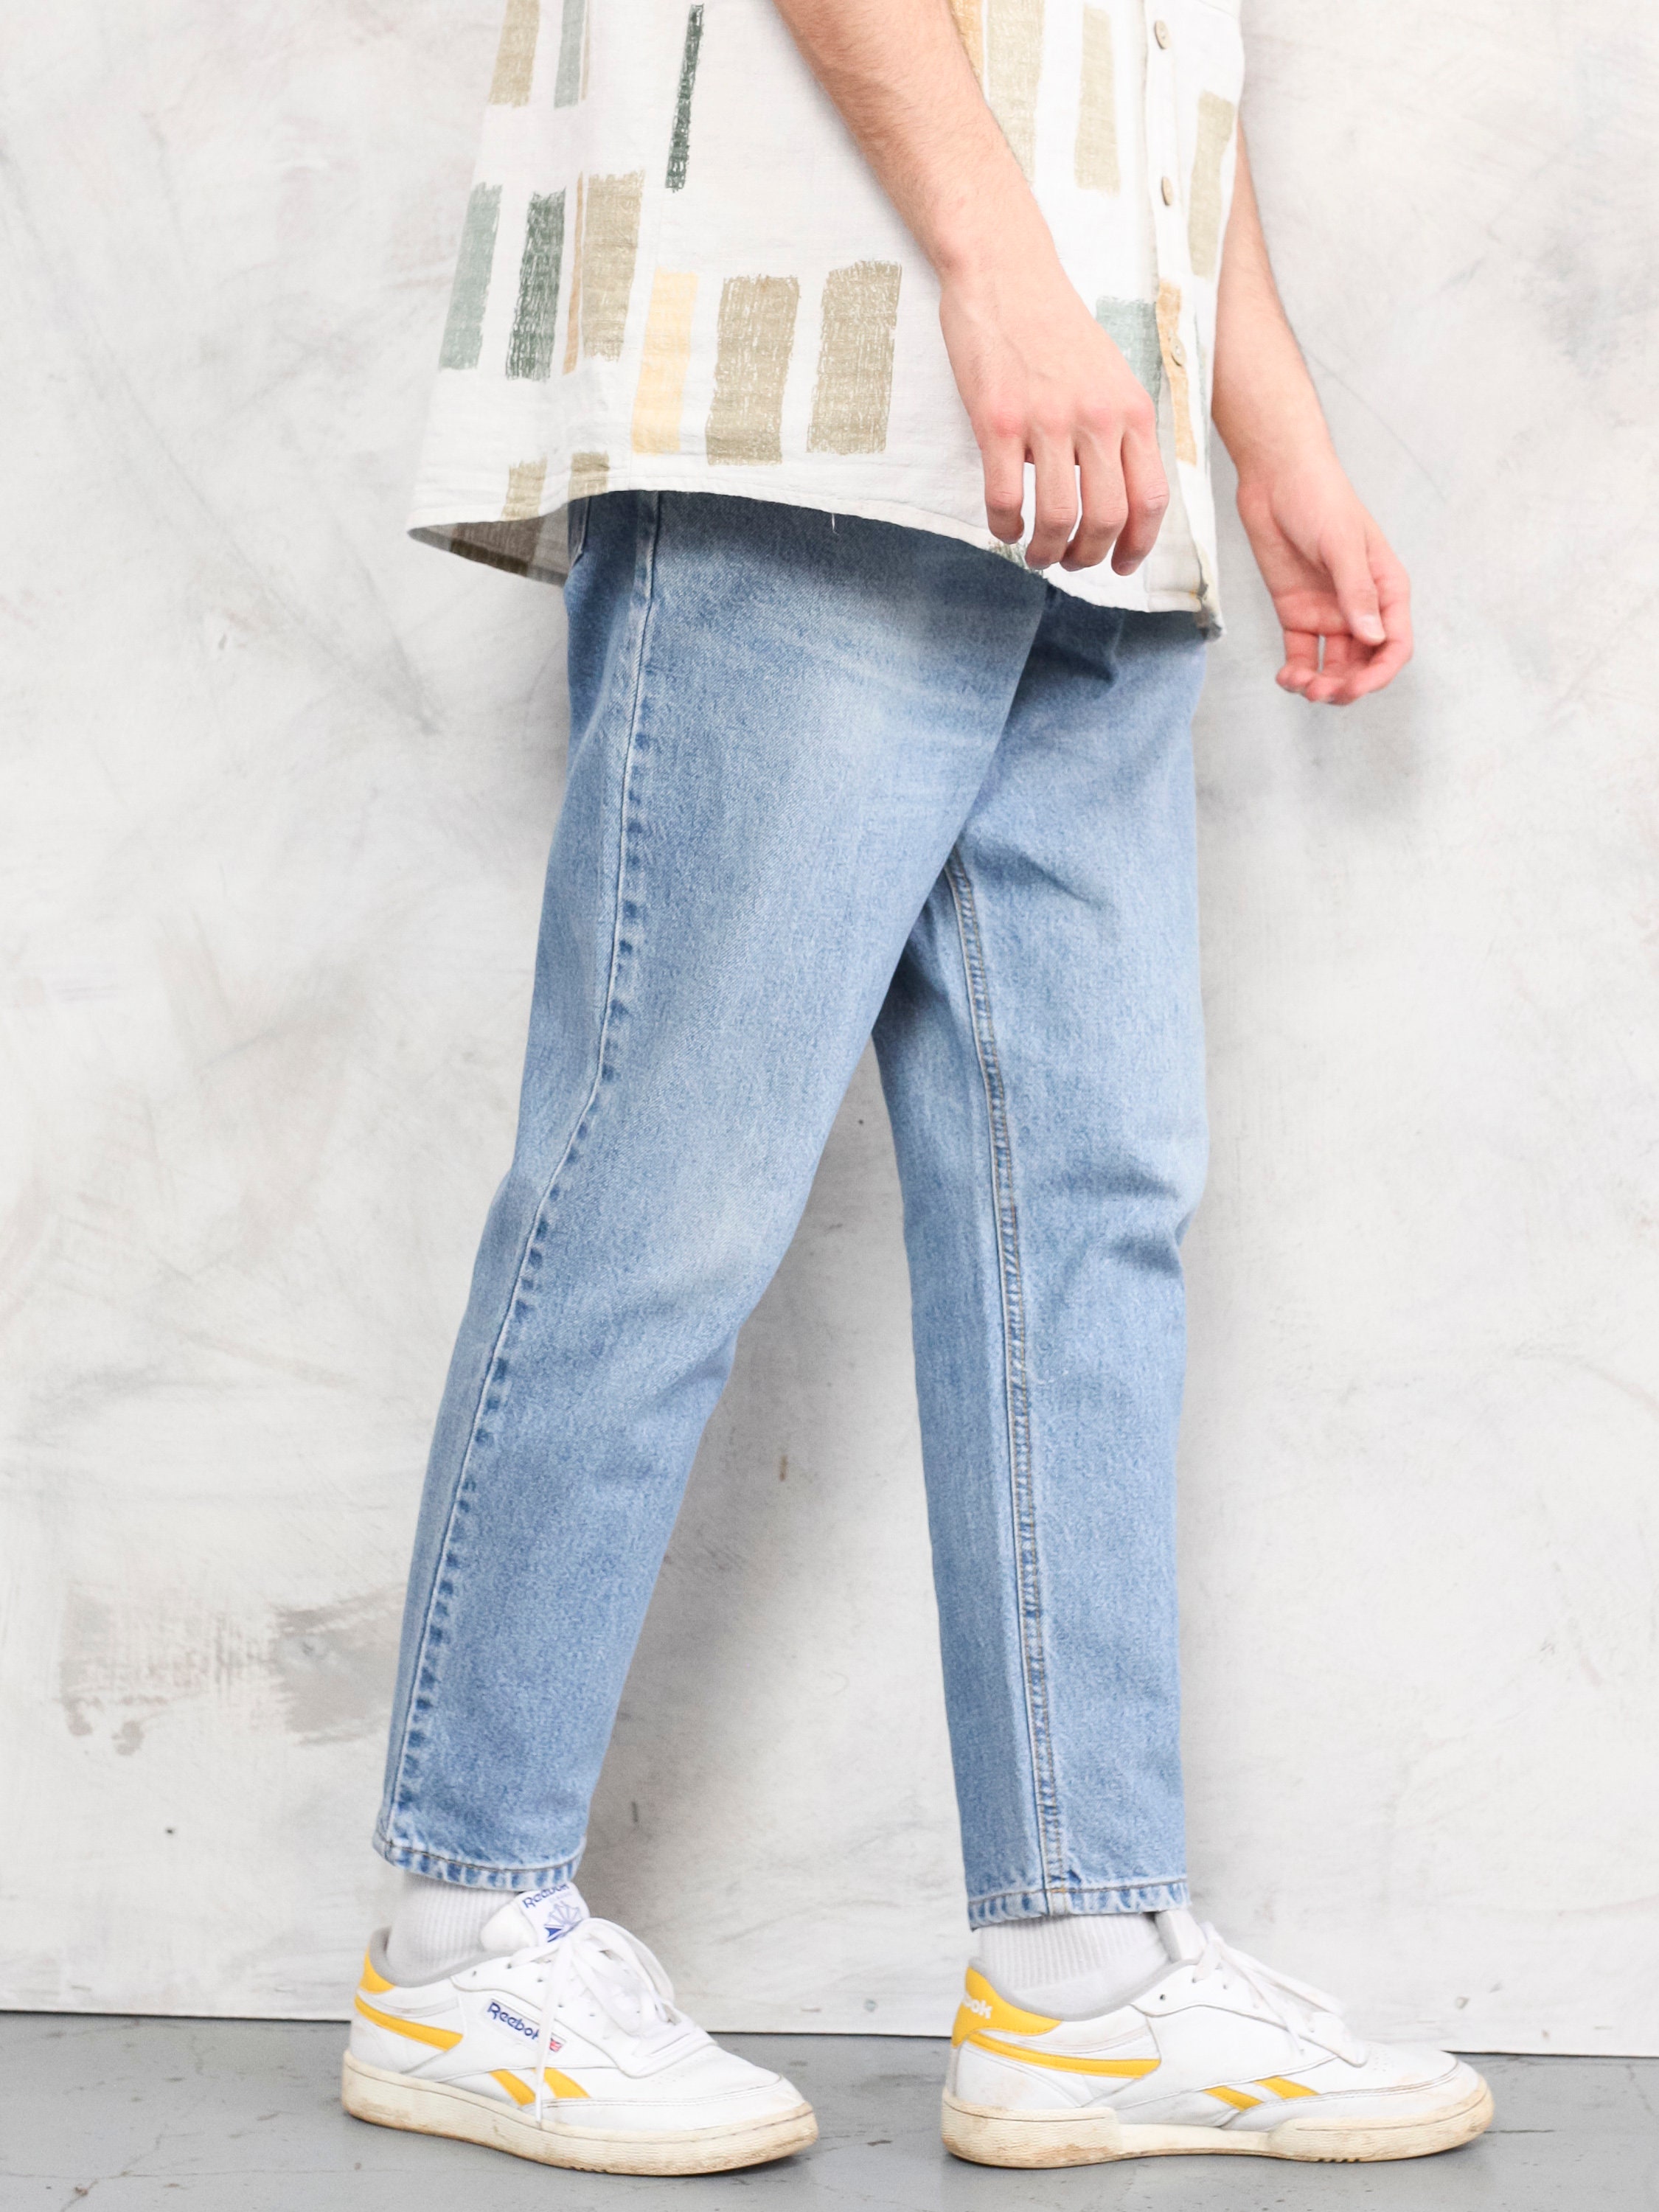 Men Denim Pants vintage jeans 1990s straight fit men trousers | Etsy